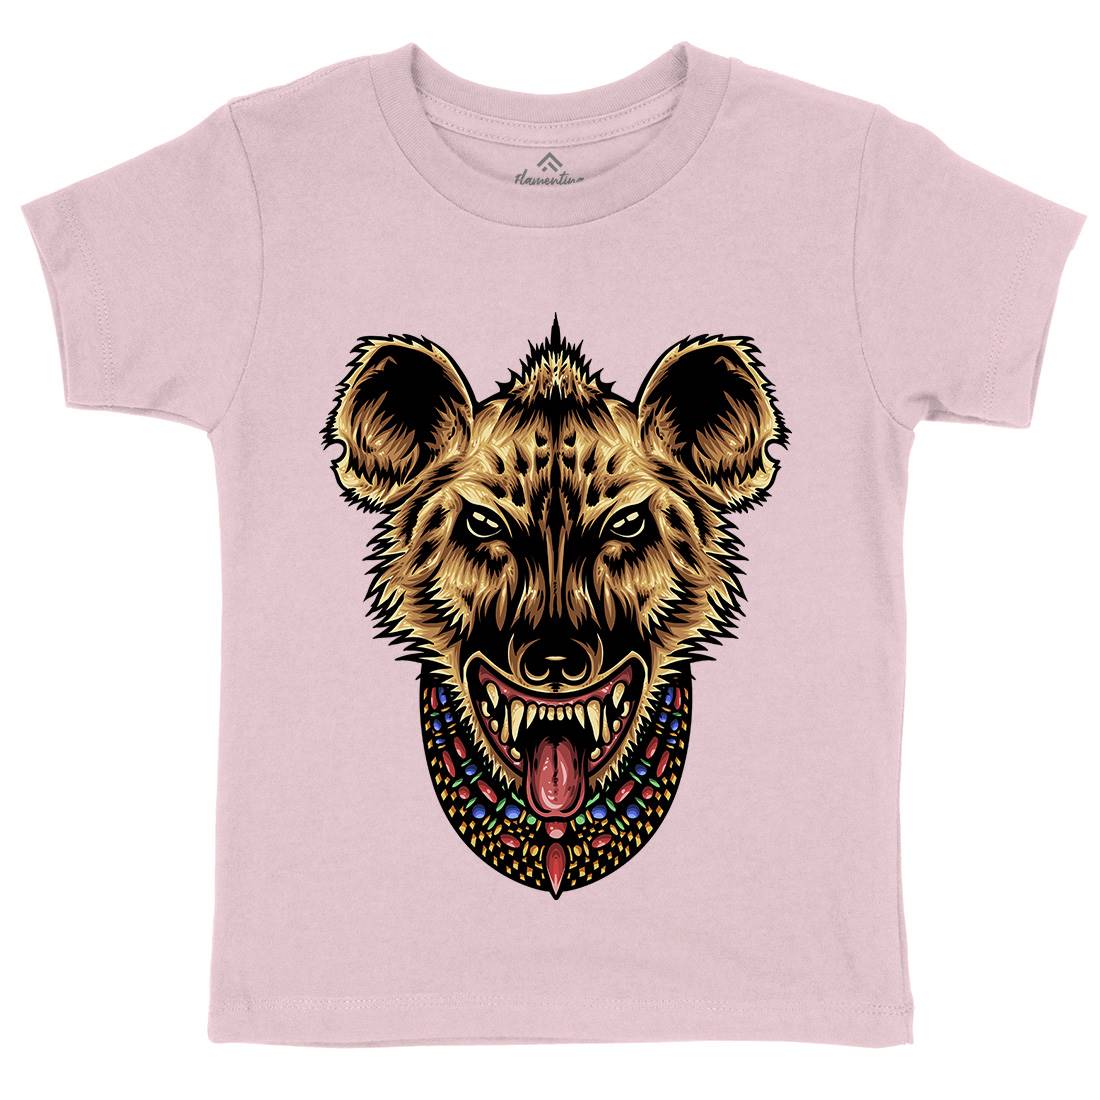 Domination Kids Crew Neck T-Shirt Animals A480